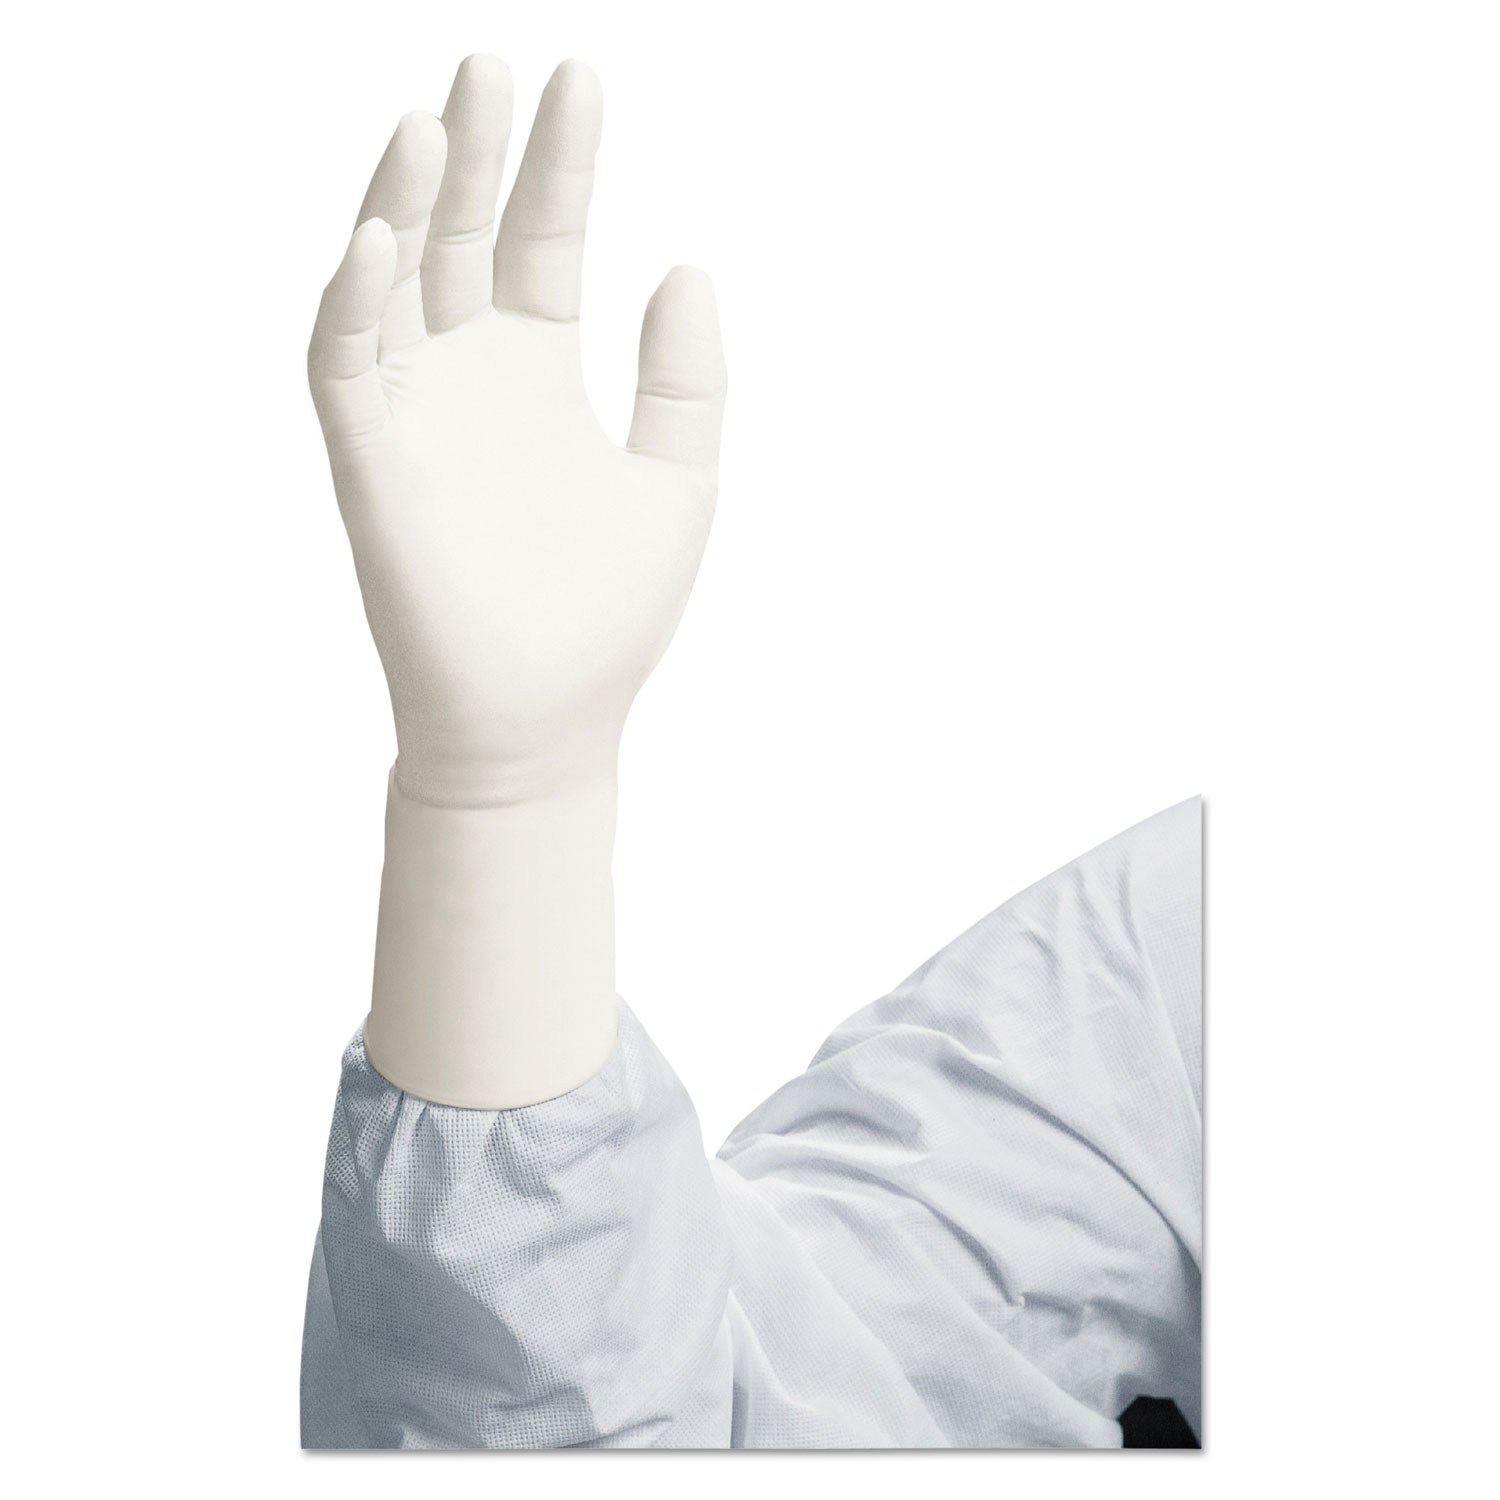 G3 NXT Nitrile Gloves, Powder-Free, 305mm Length, Large, White, 100/Bag 10 BG/Case